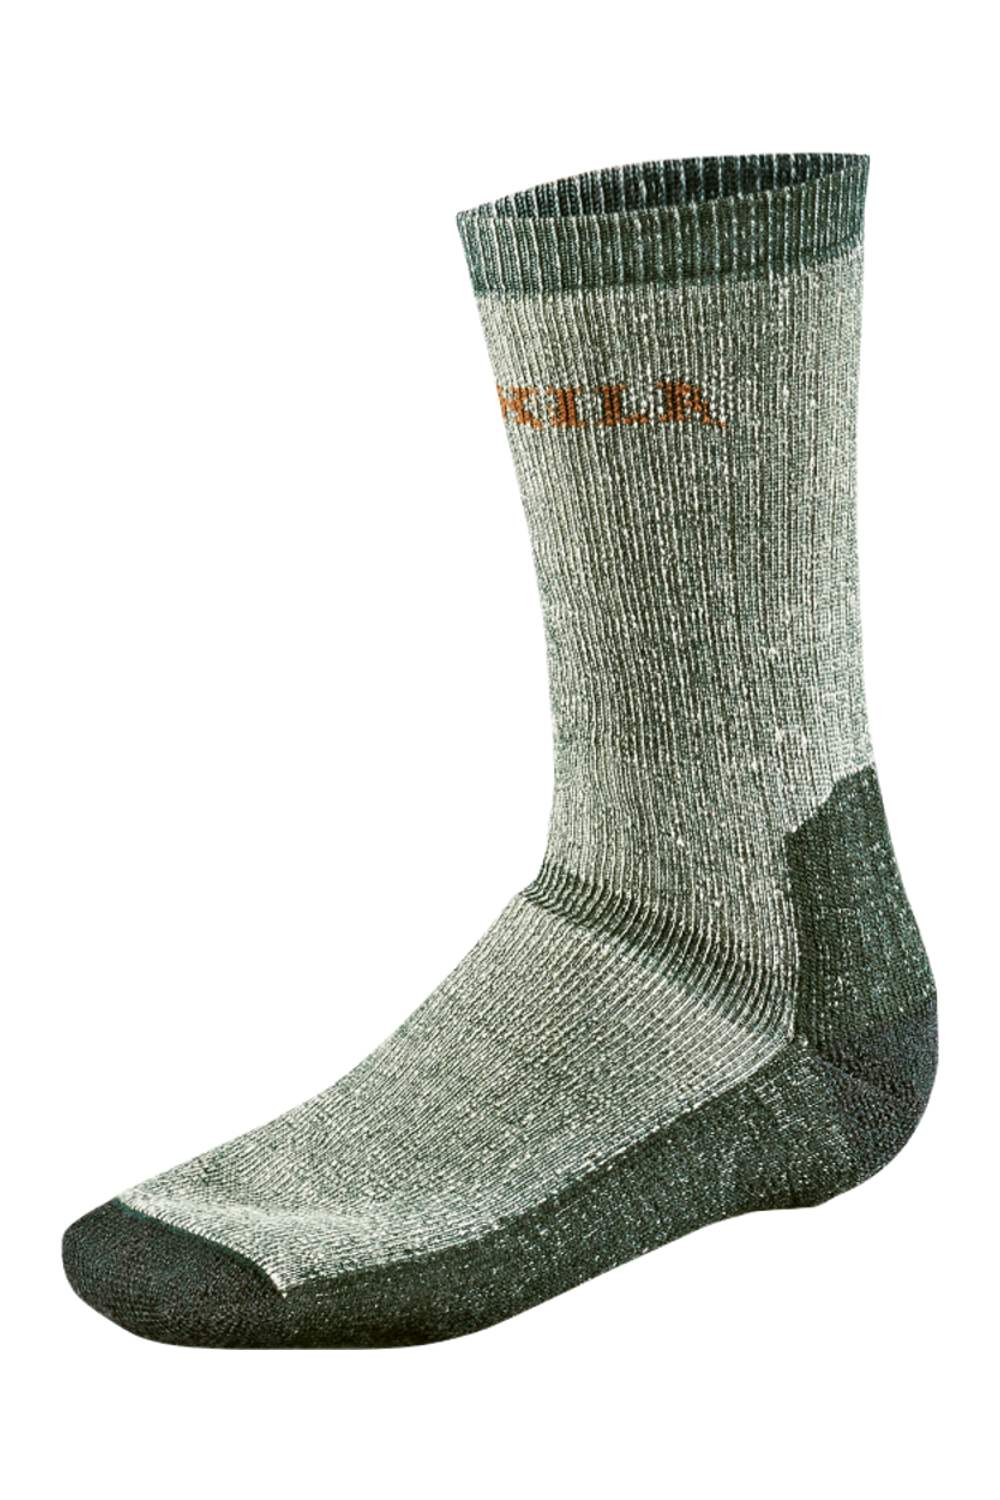 Harkila Expedition Sock in Grey/Green 